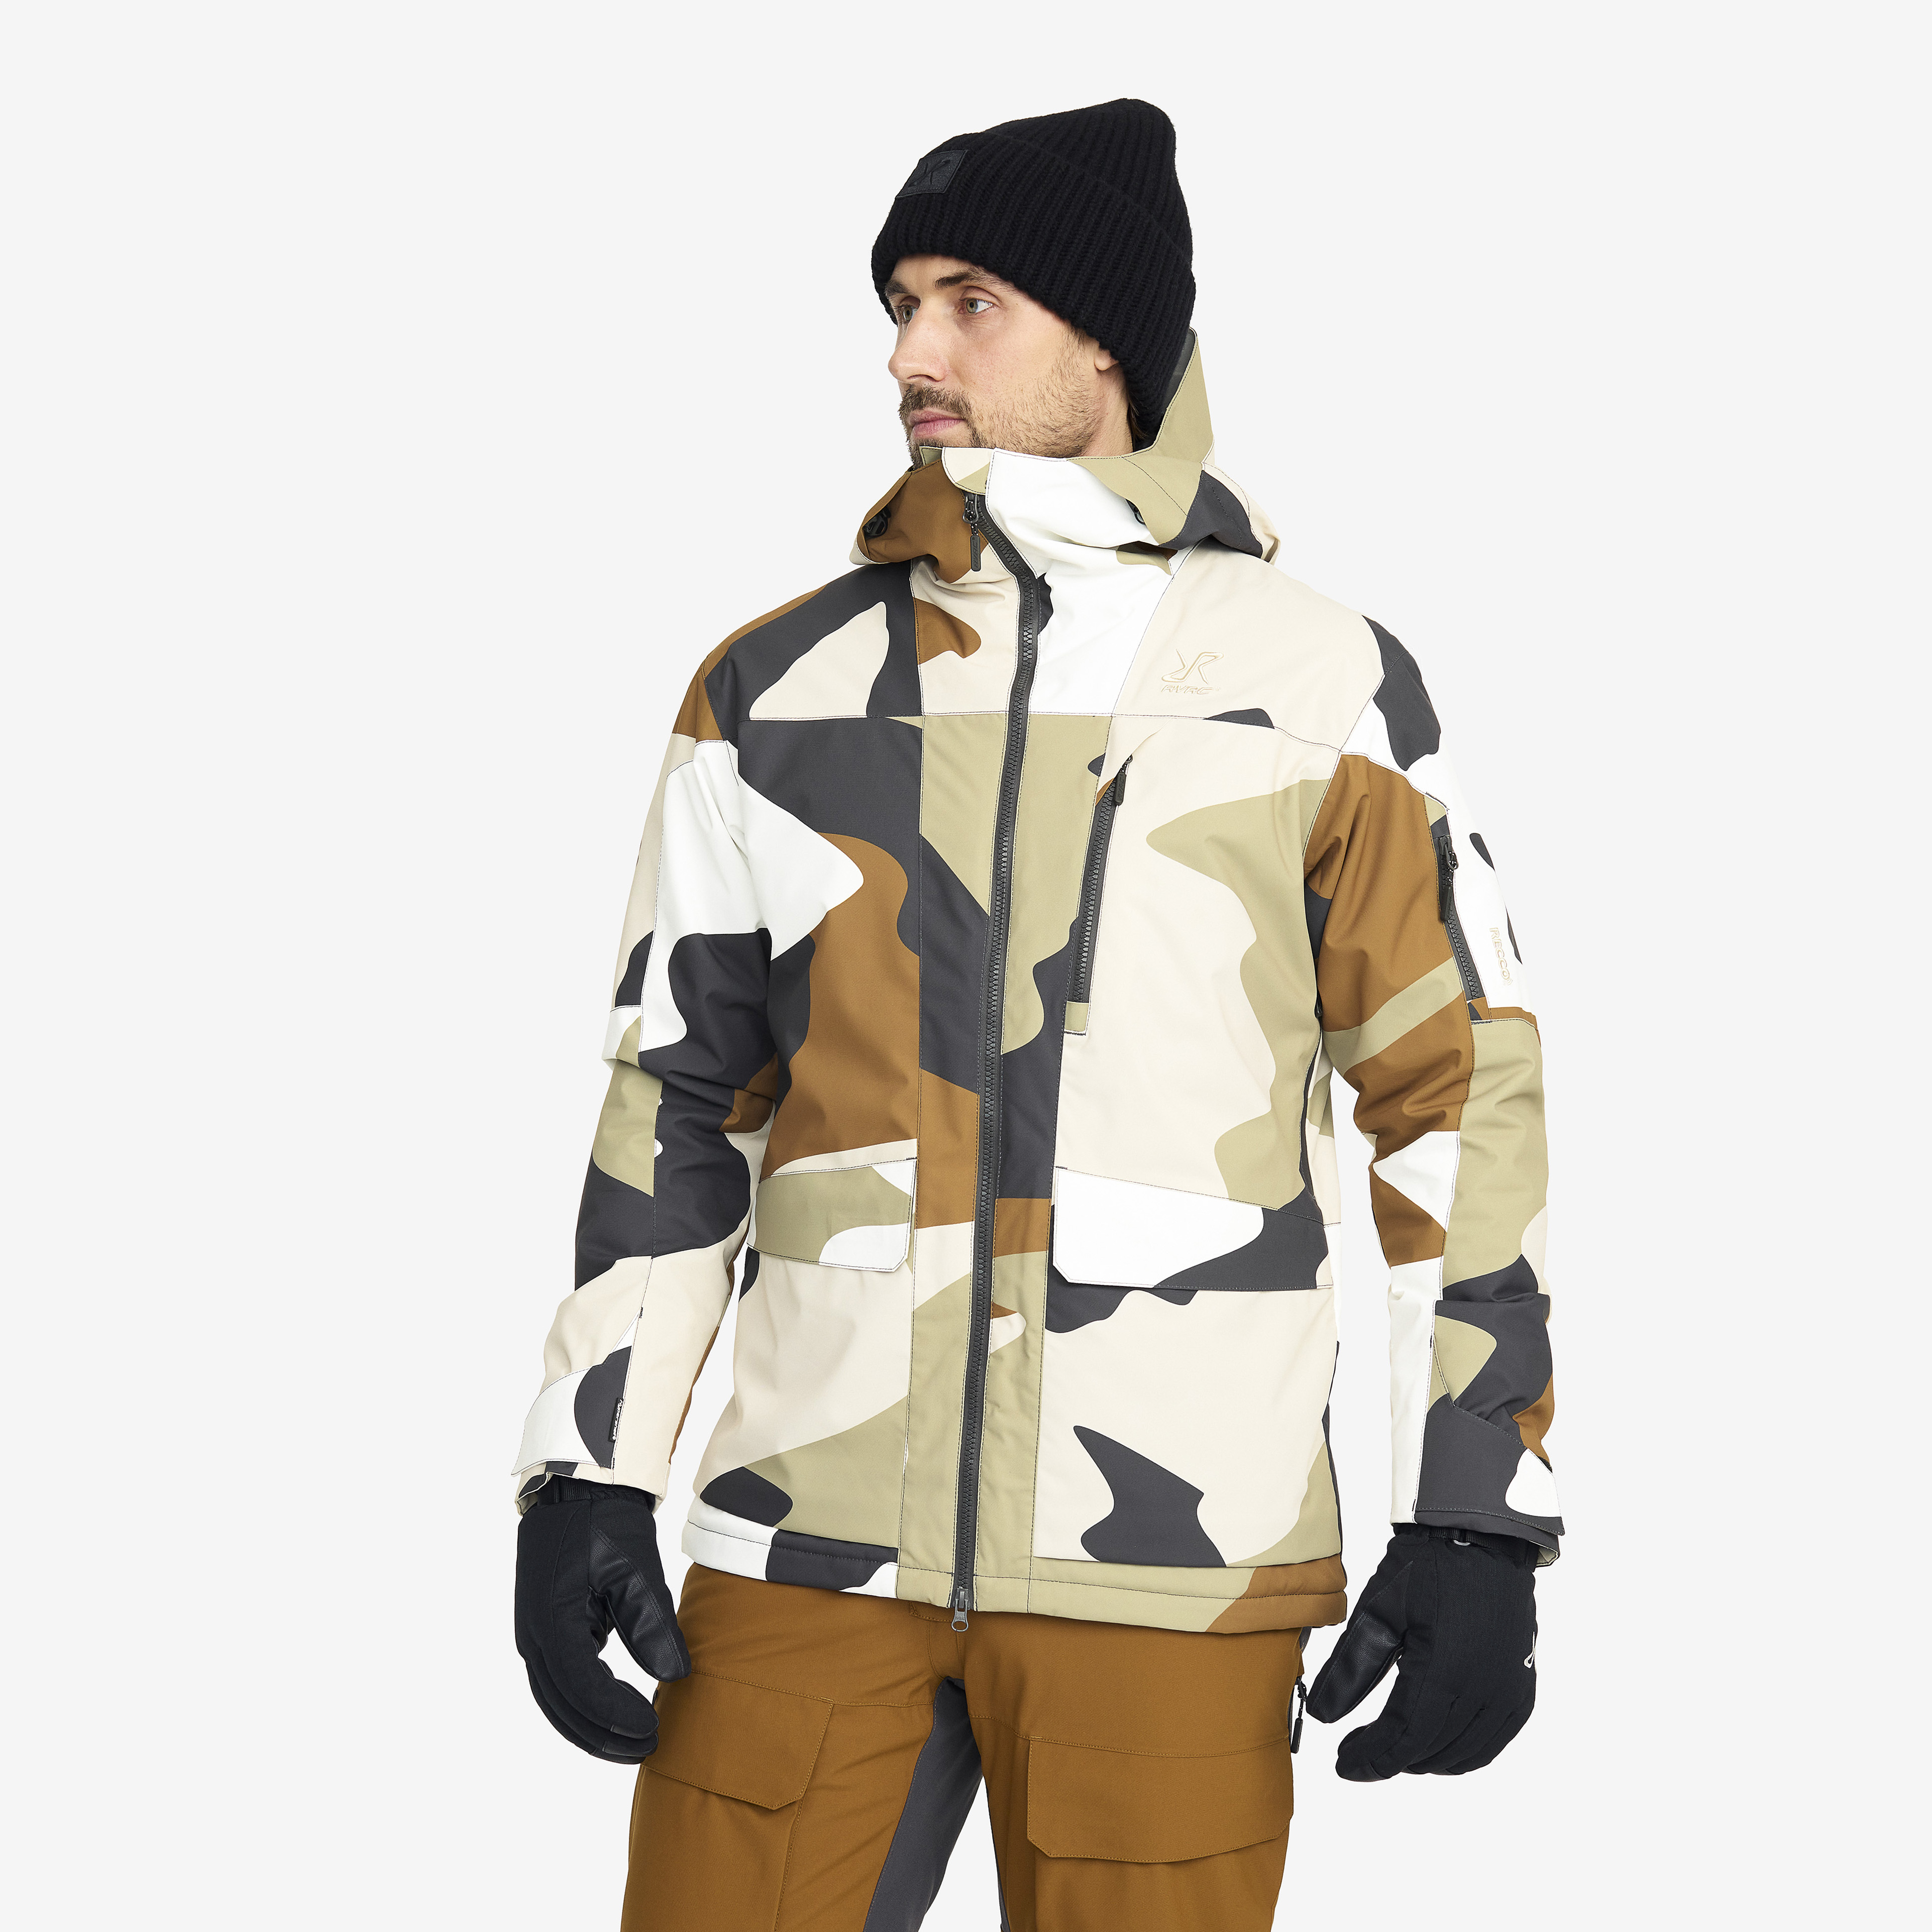 Halo 2L Insulated Ski Jacket – Herr – Anthracite/Rubber Storlek:M – Skaljacka & Vindjacka